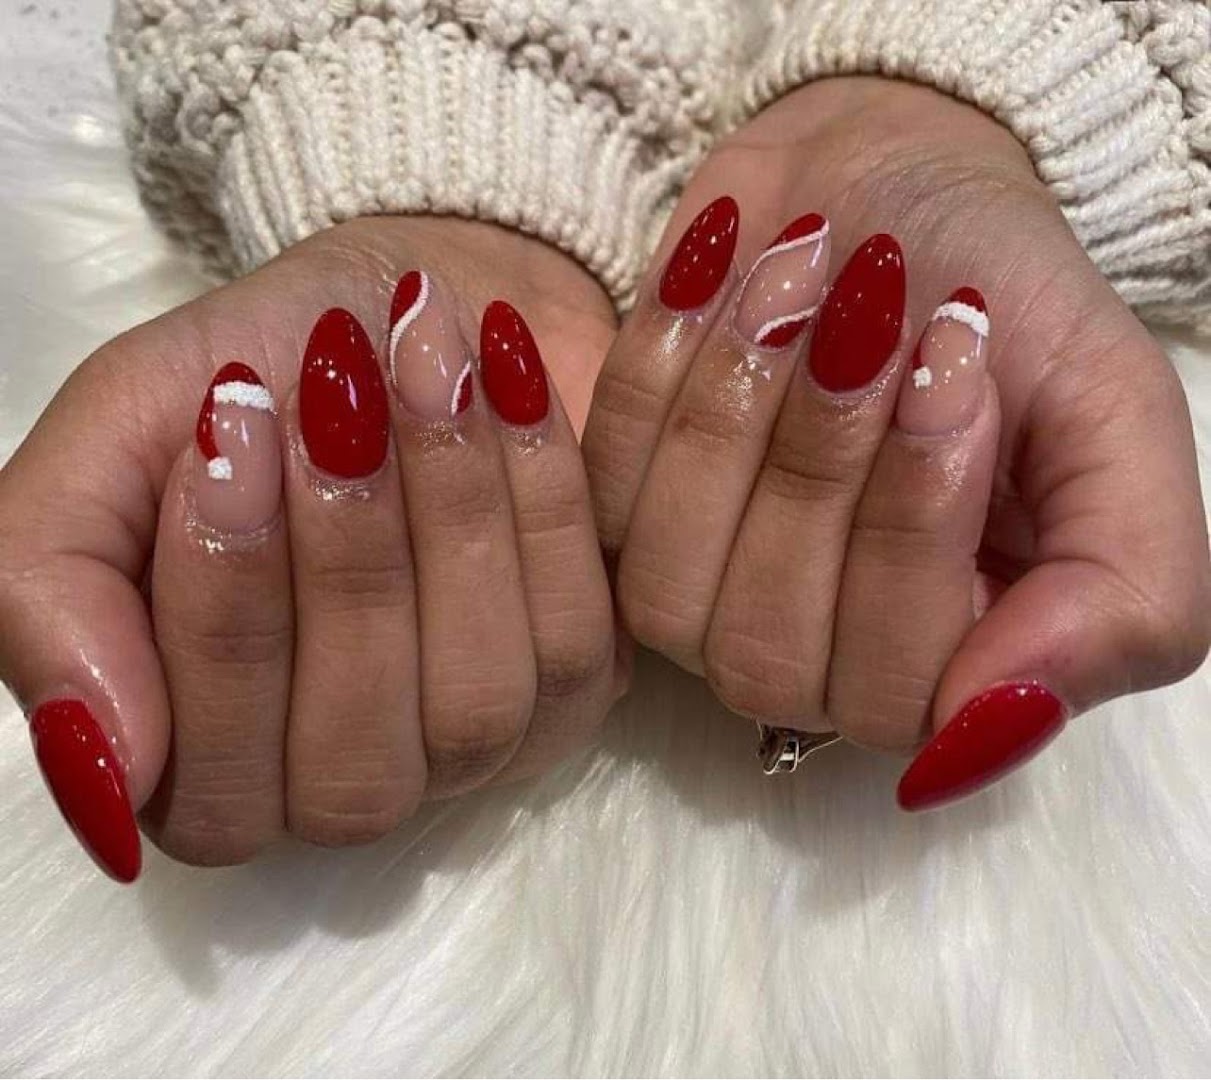 Bella Nails